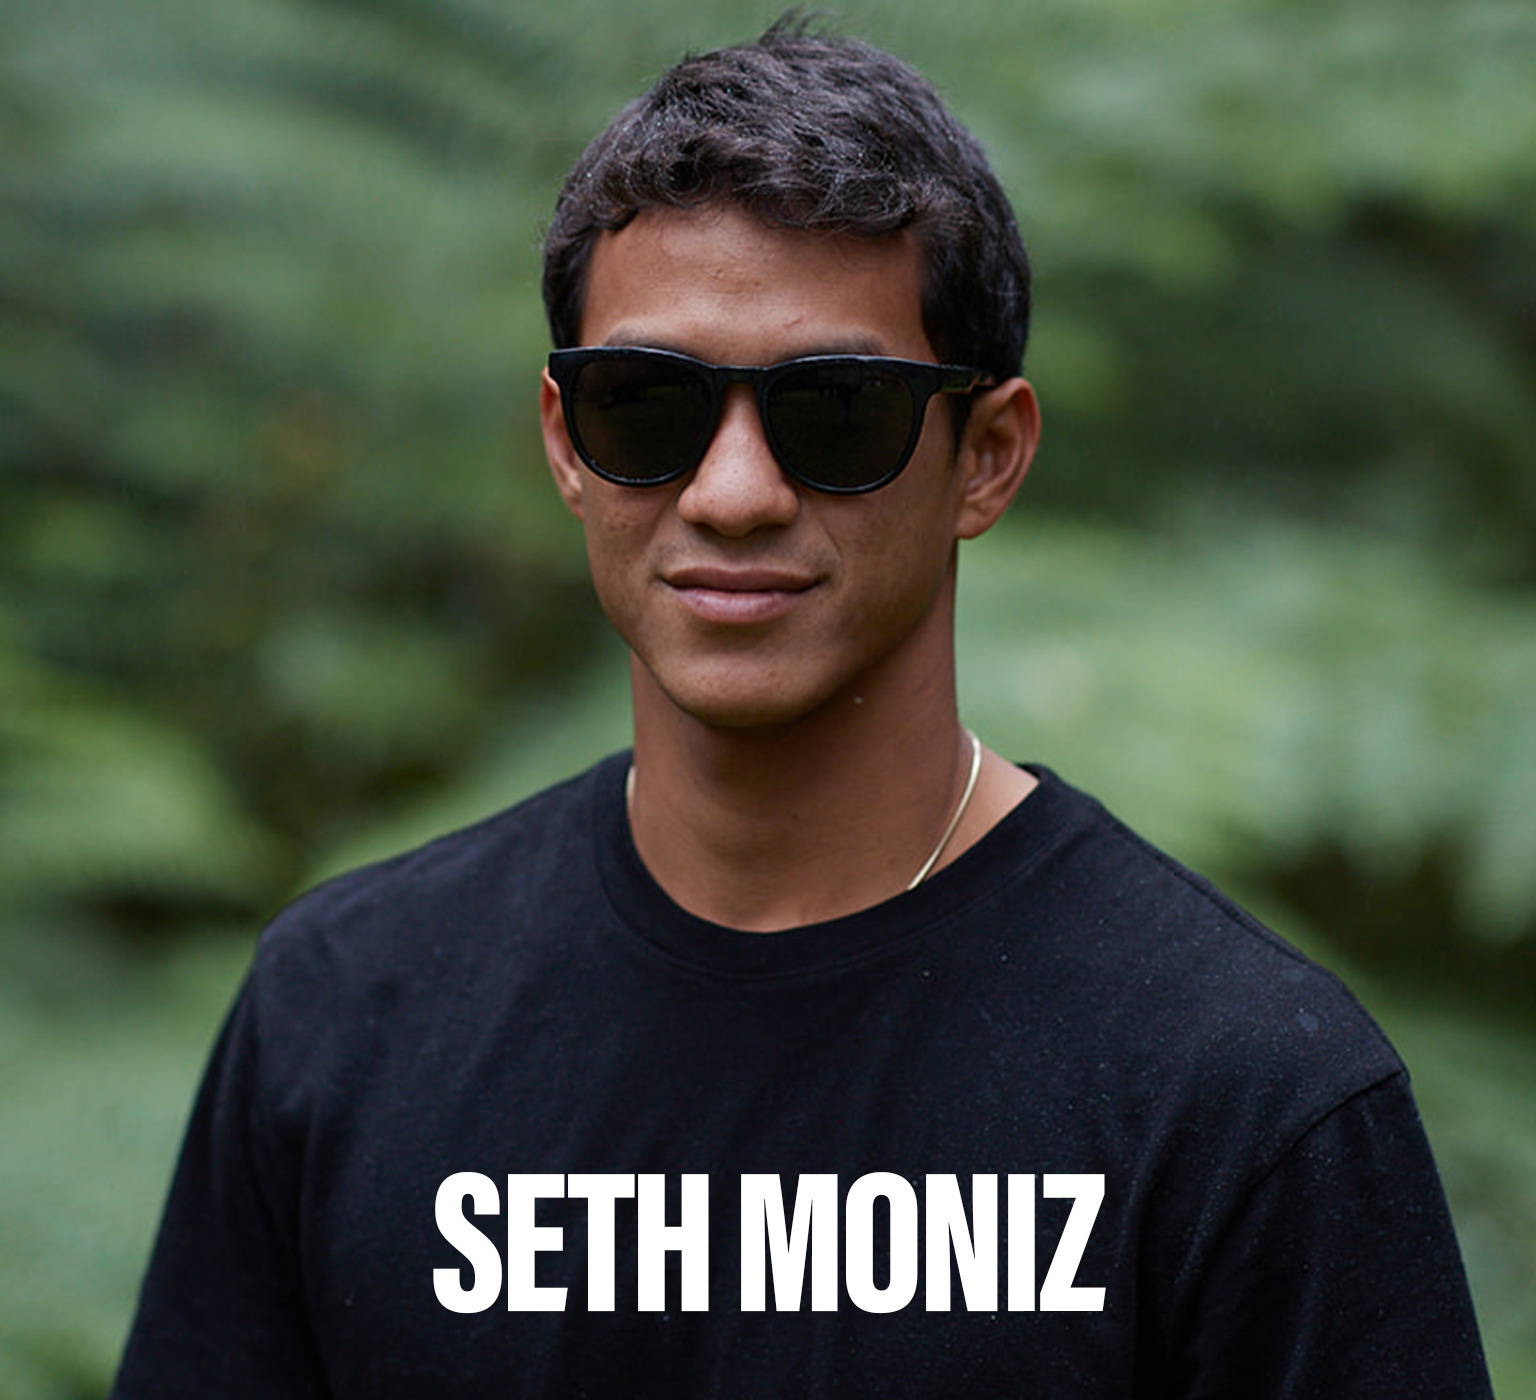 Seth Moniz